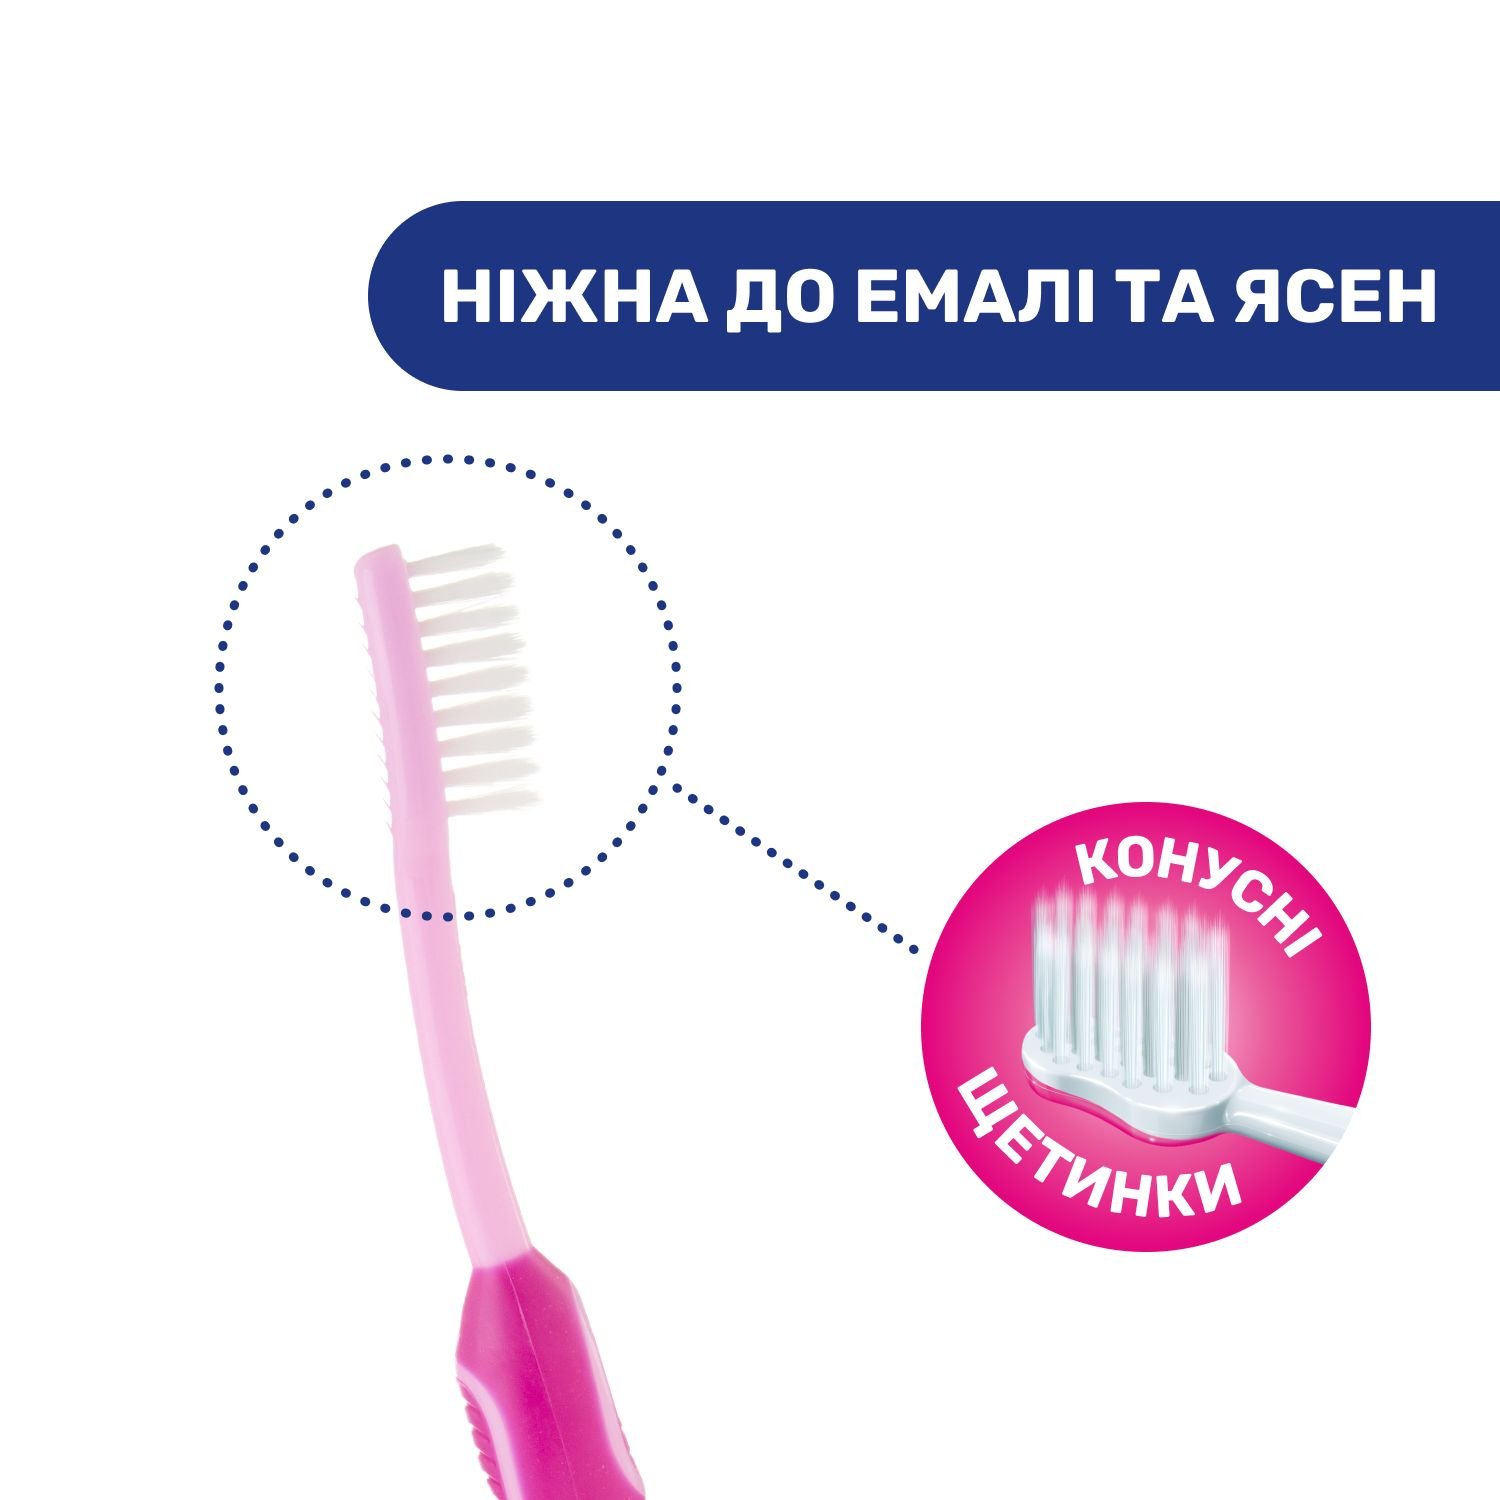 Дитяча зубна щітка Chicco Зайчик для молочних зубів, рожевий, 3-6 років (09079.10.10) - фото 4